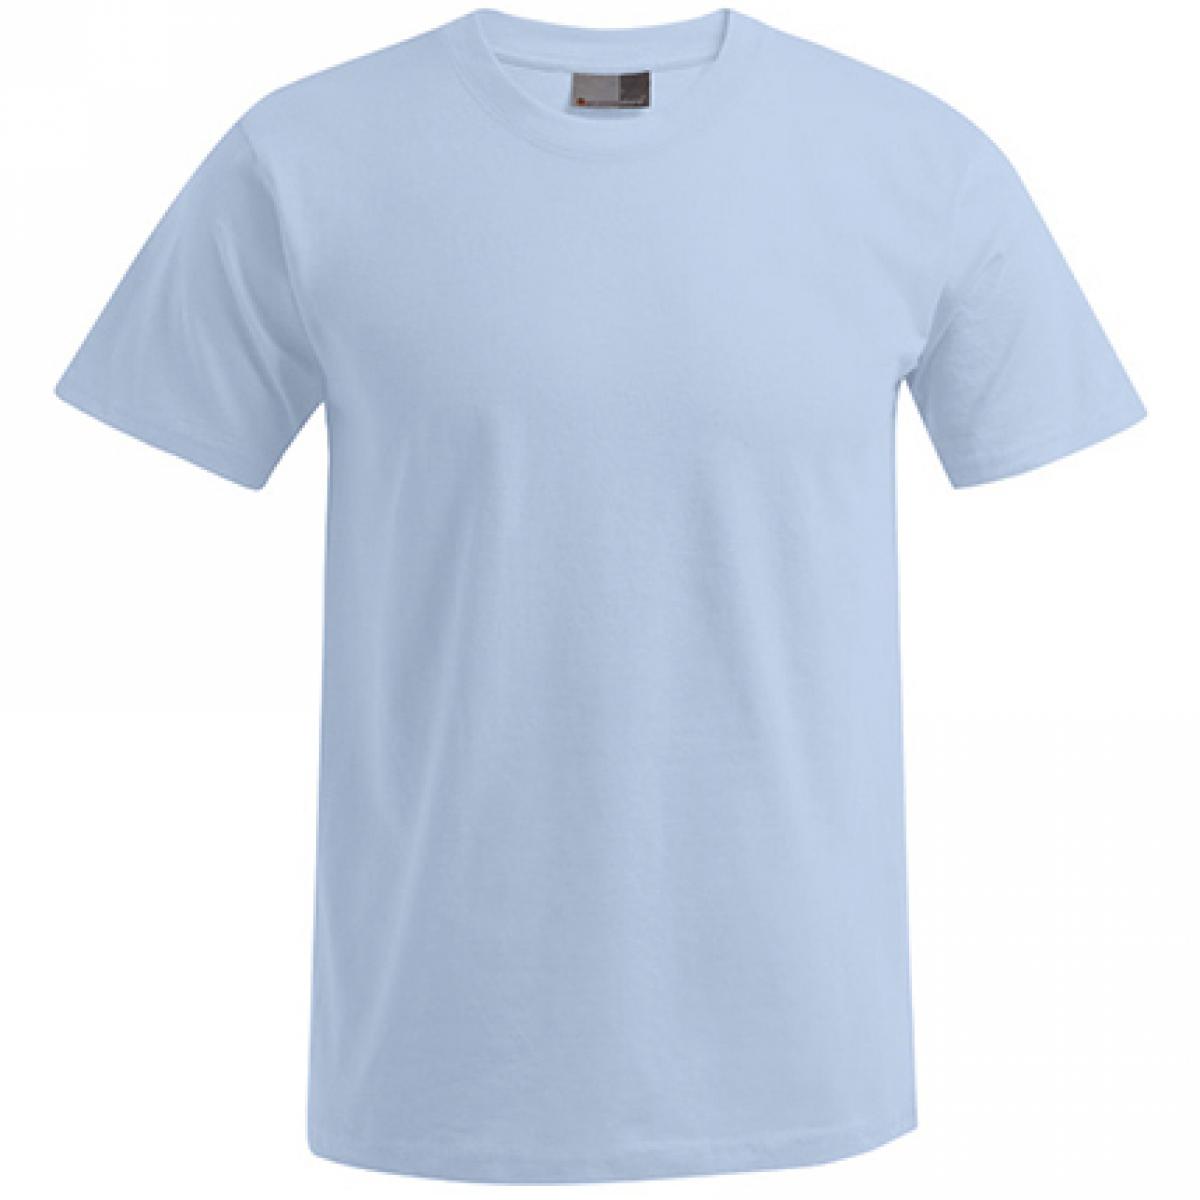 Hersteller: Promodoro Herstellernummer: 3000/3099 Artikelbezeichnung: Men´s Premium Herren T-Shirt - bis 5XL Farbe: Baby Blue